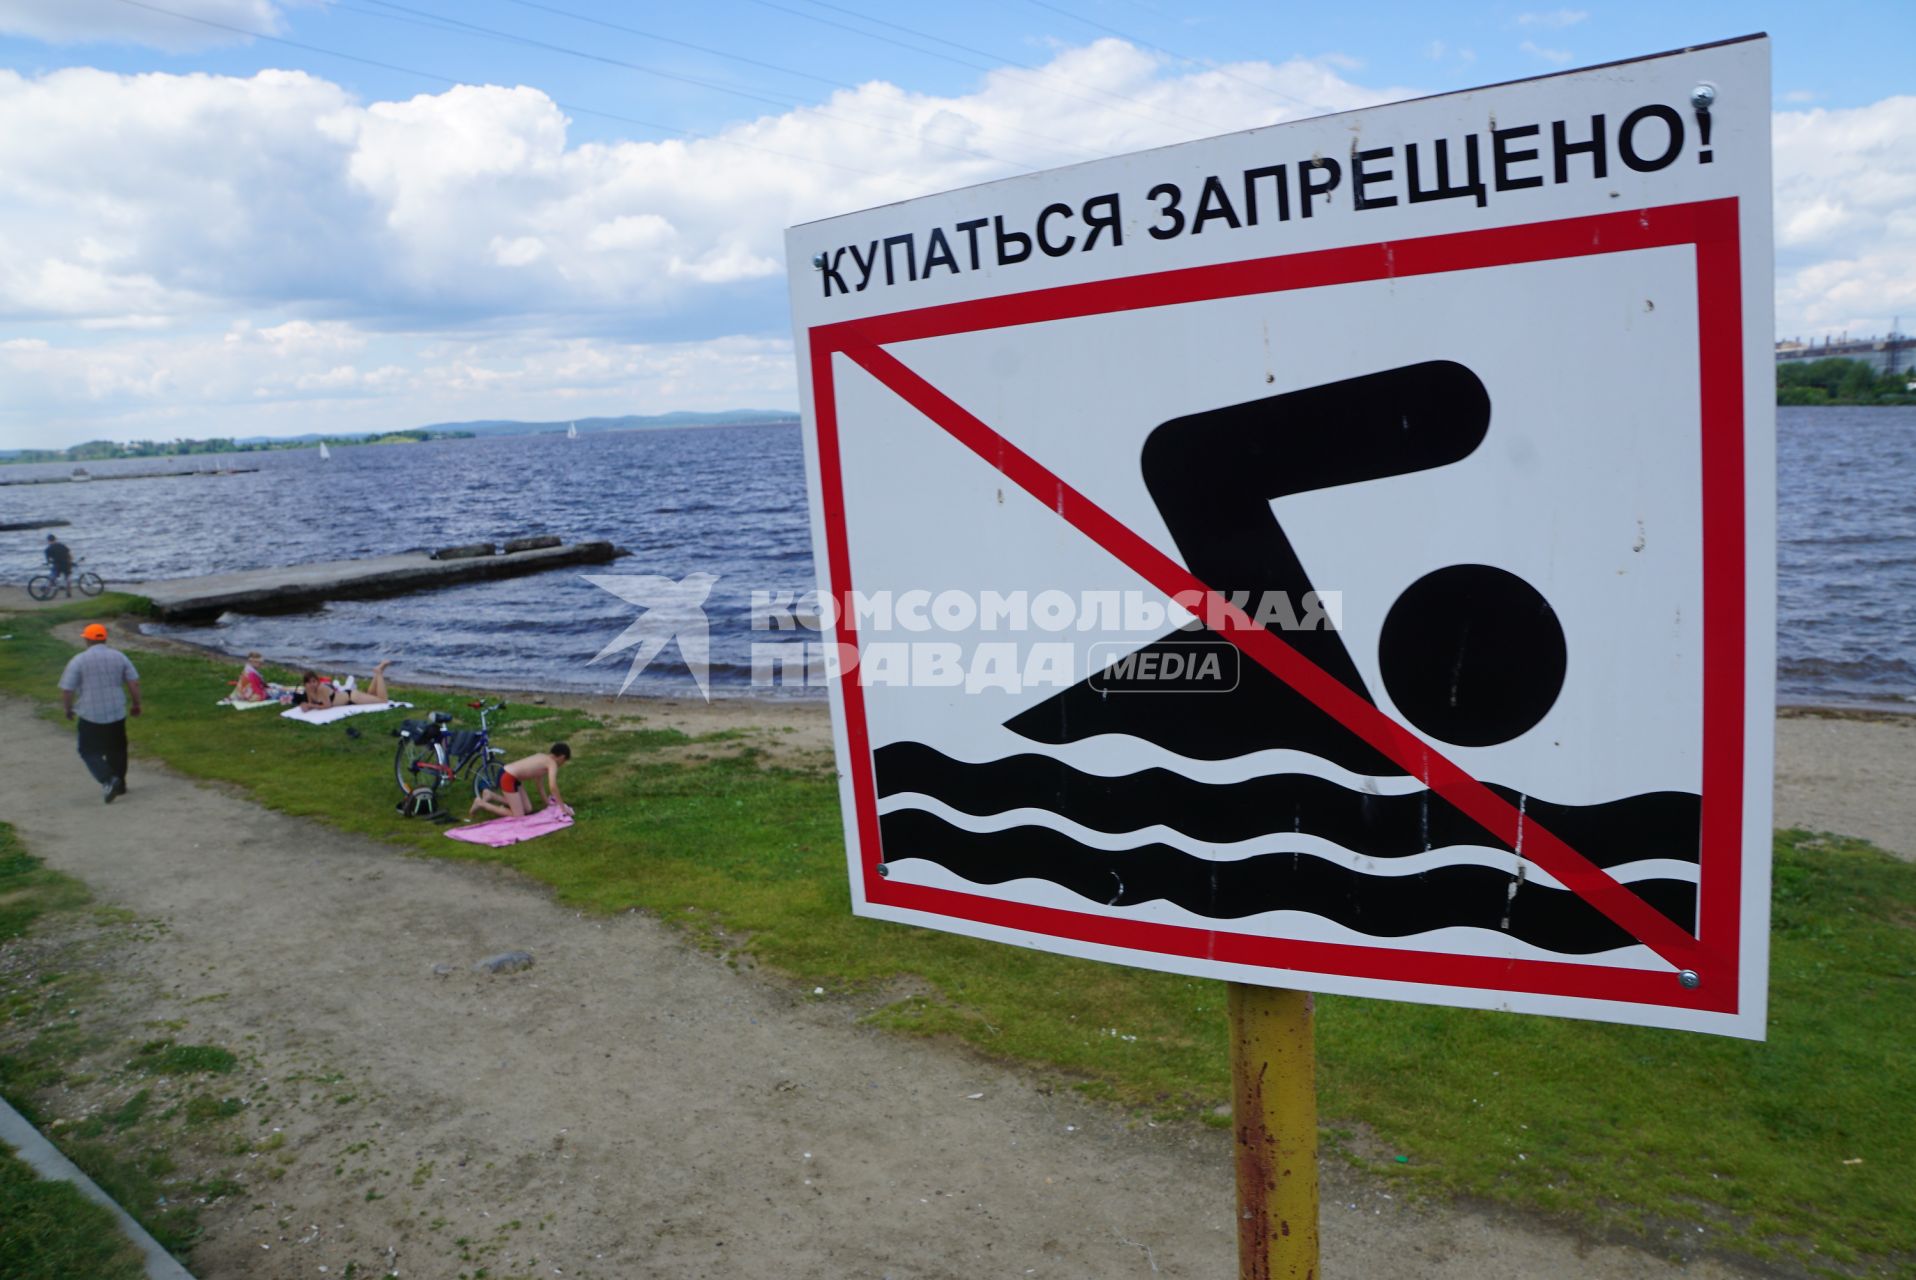 Екатеринбург. Горожане отдыхают на городском пляже у ВИЗовского пруда где купание запрещено